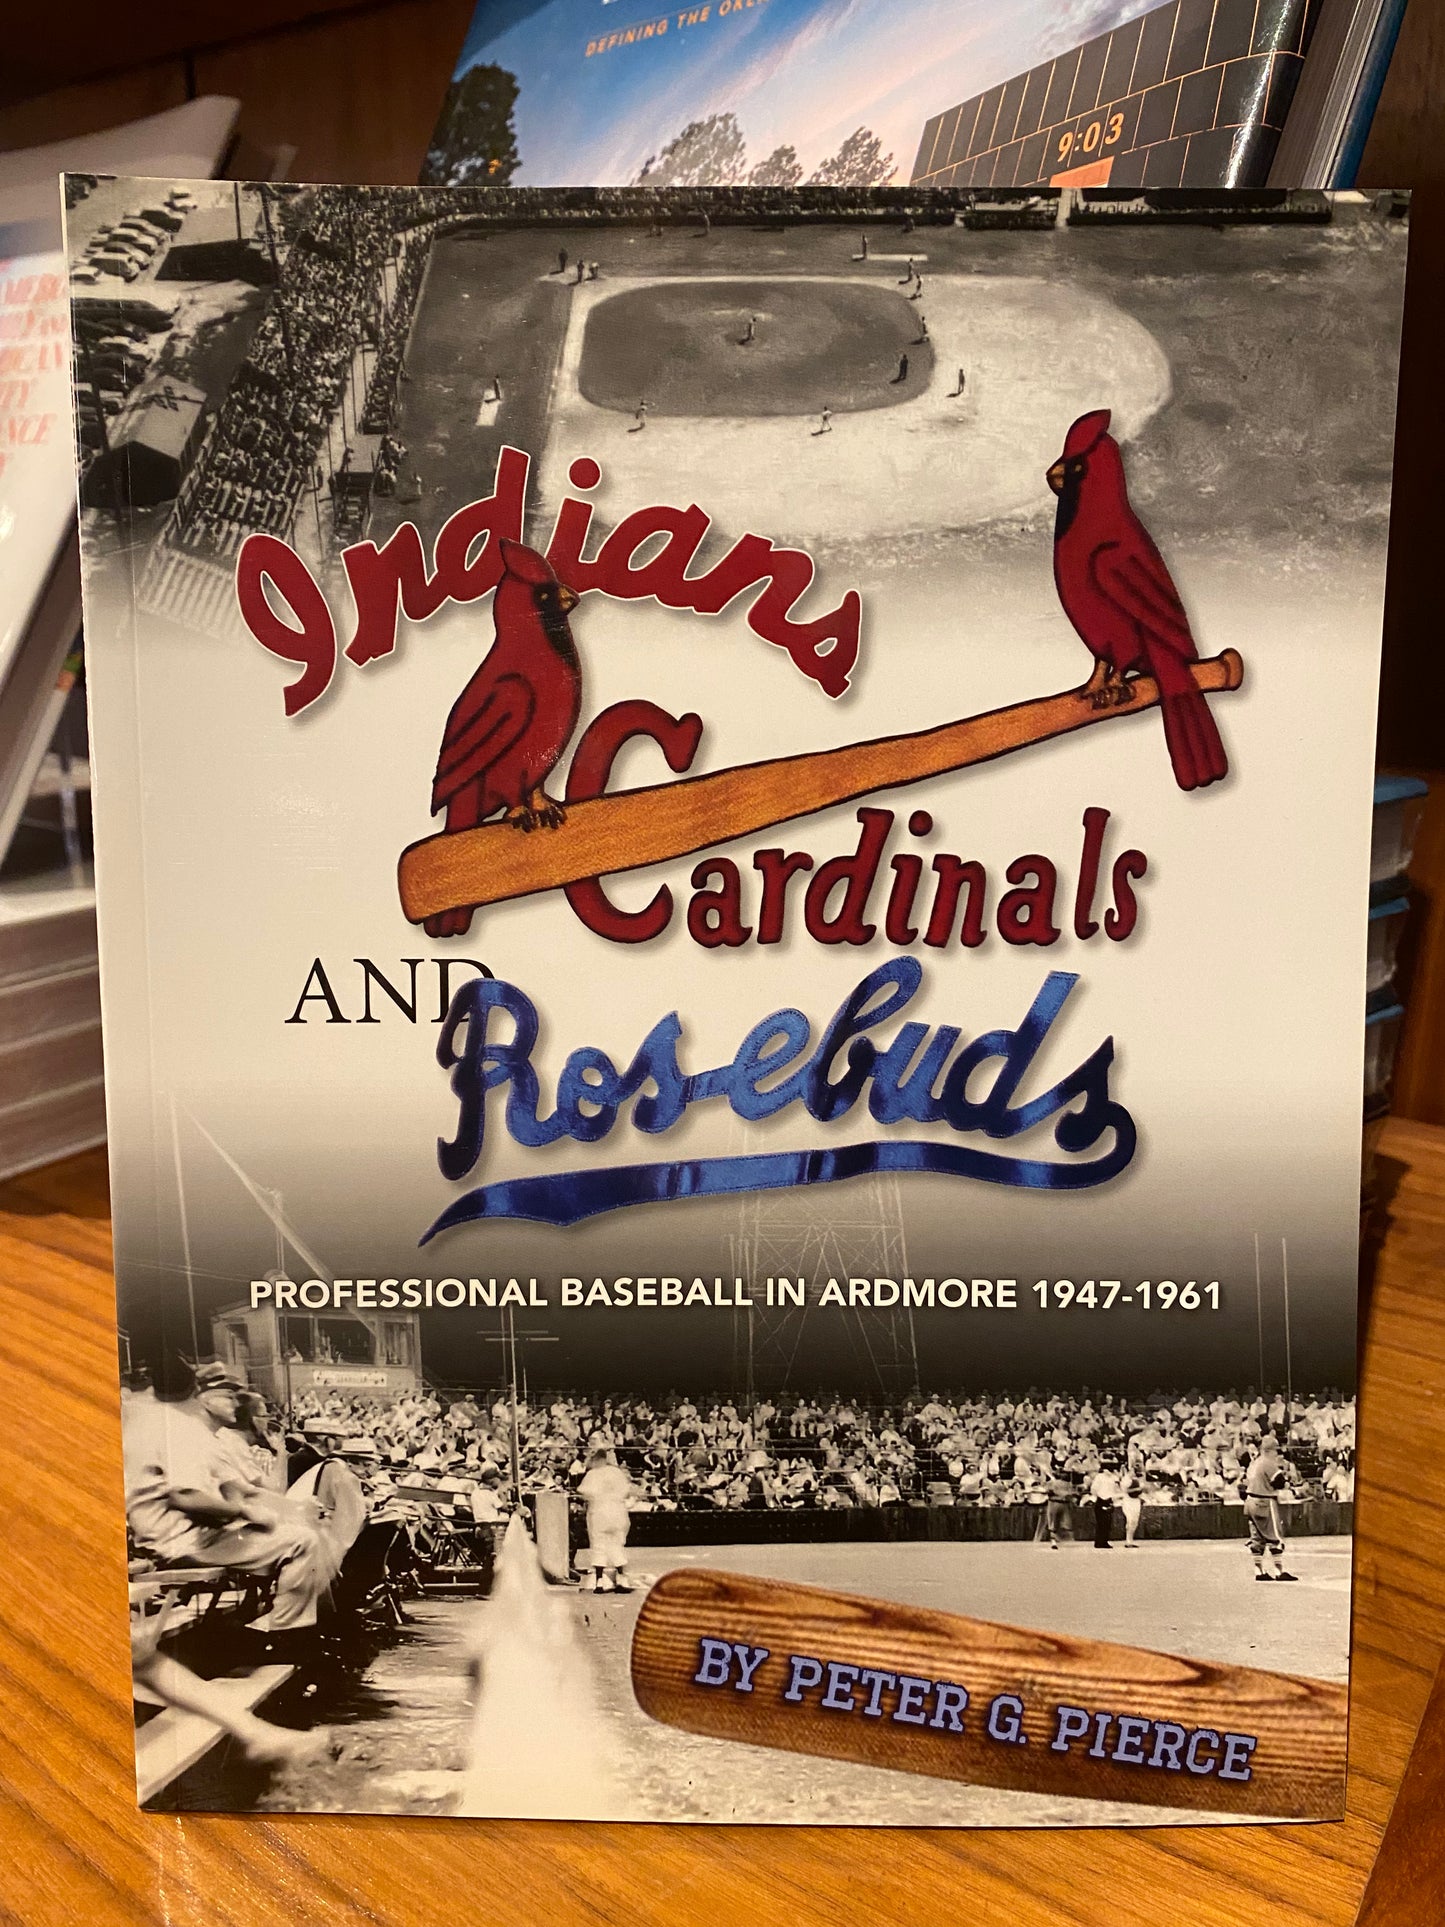 Indians, Cardinals & Rosebuds